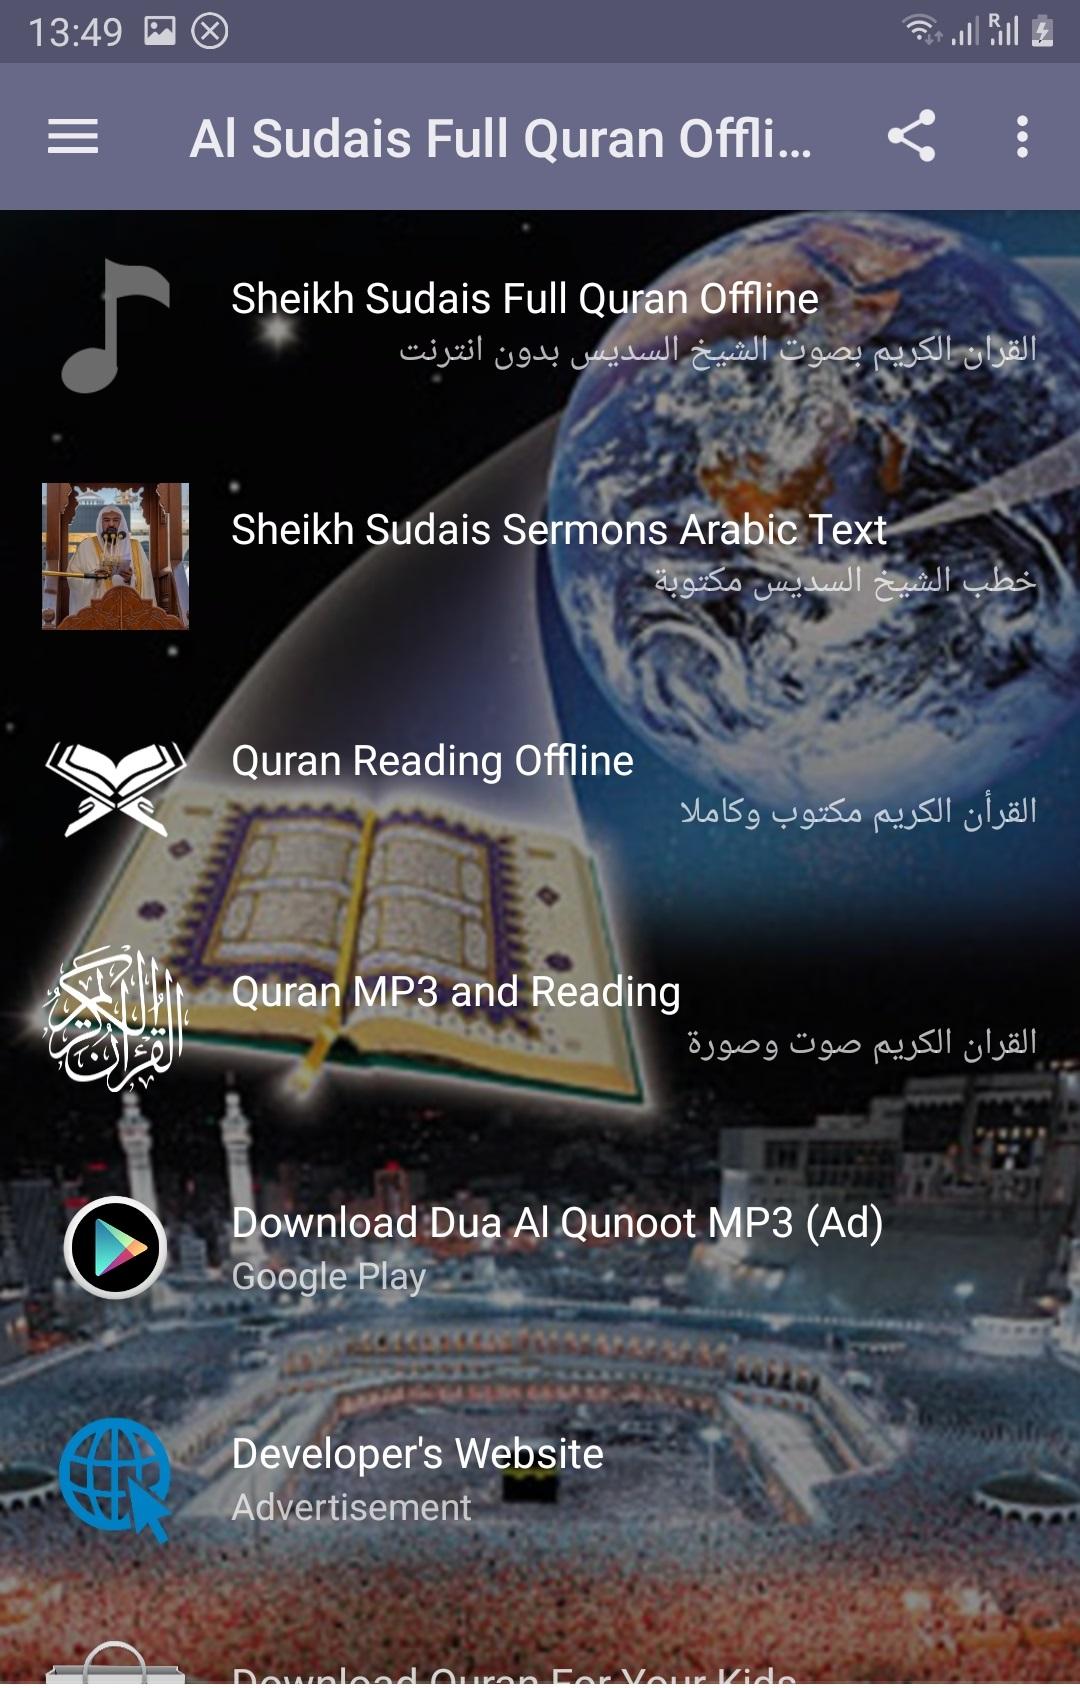 Al Sudais Full Quran Offline APK 3.2 for Android – Download Al Sudais Full  Quran Offline APK Latest Version from APKFab.com